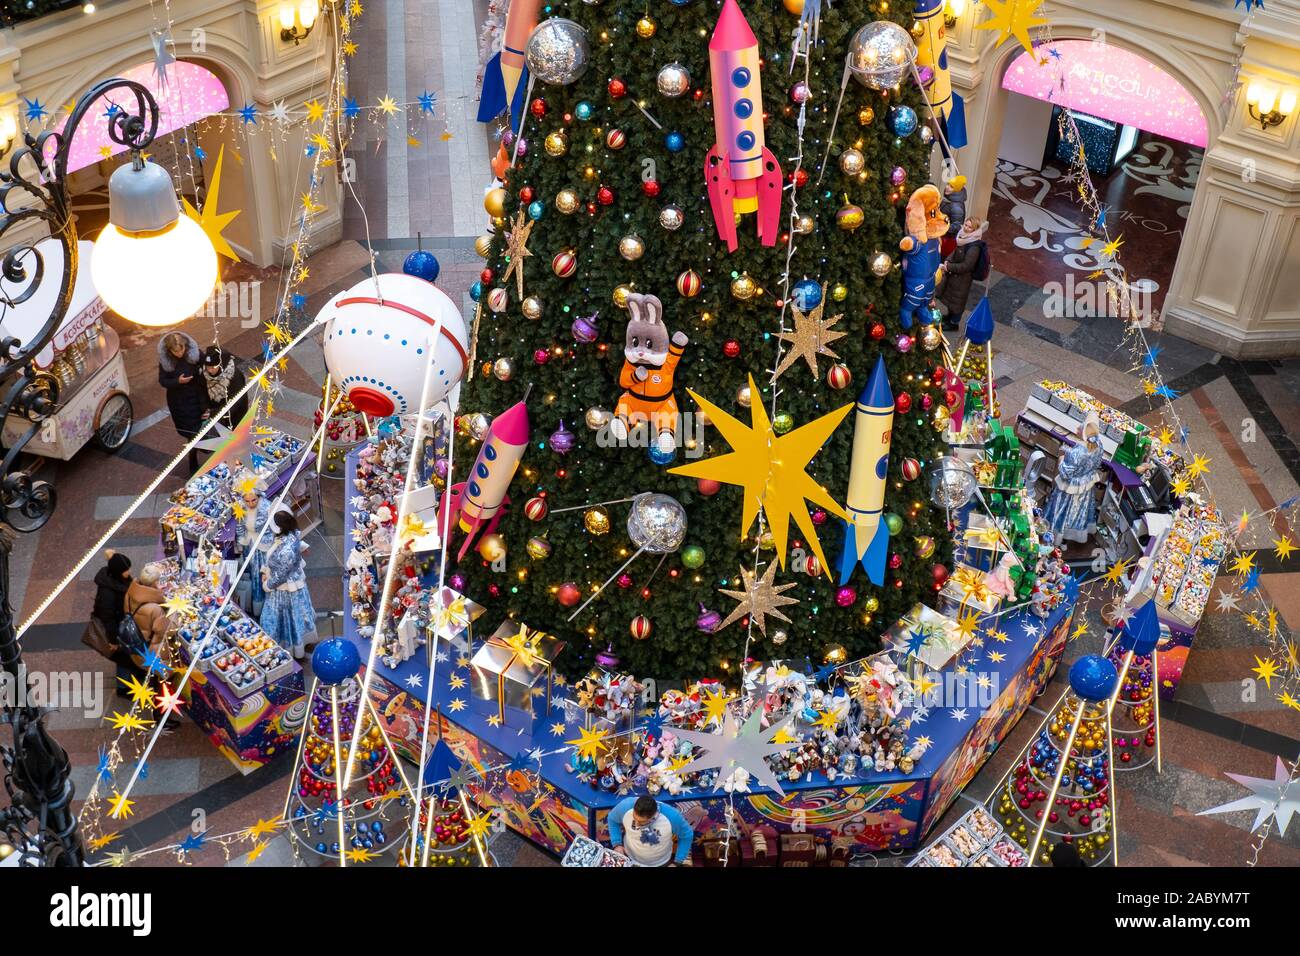 Moscou, Russie - 25 novembre 2019 - Nouvel An des arbres avec cartoon toys in the State Department Store, sur la Place Rouge. Noël dans le centre de Moscou. Conception sur un thème de l'espace Banque D'Images